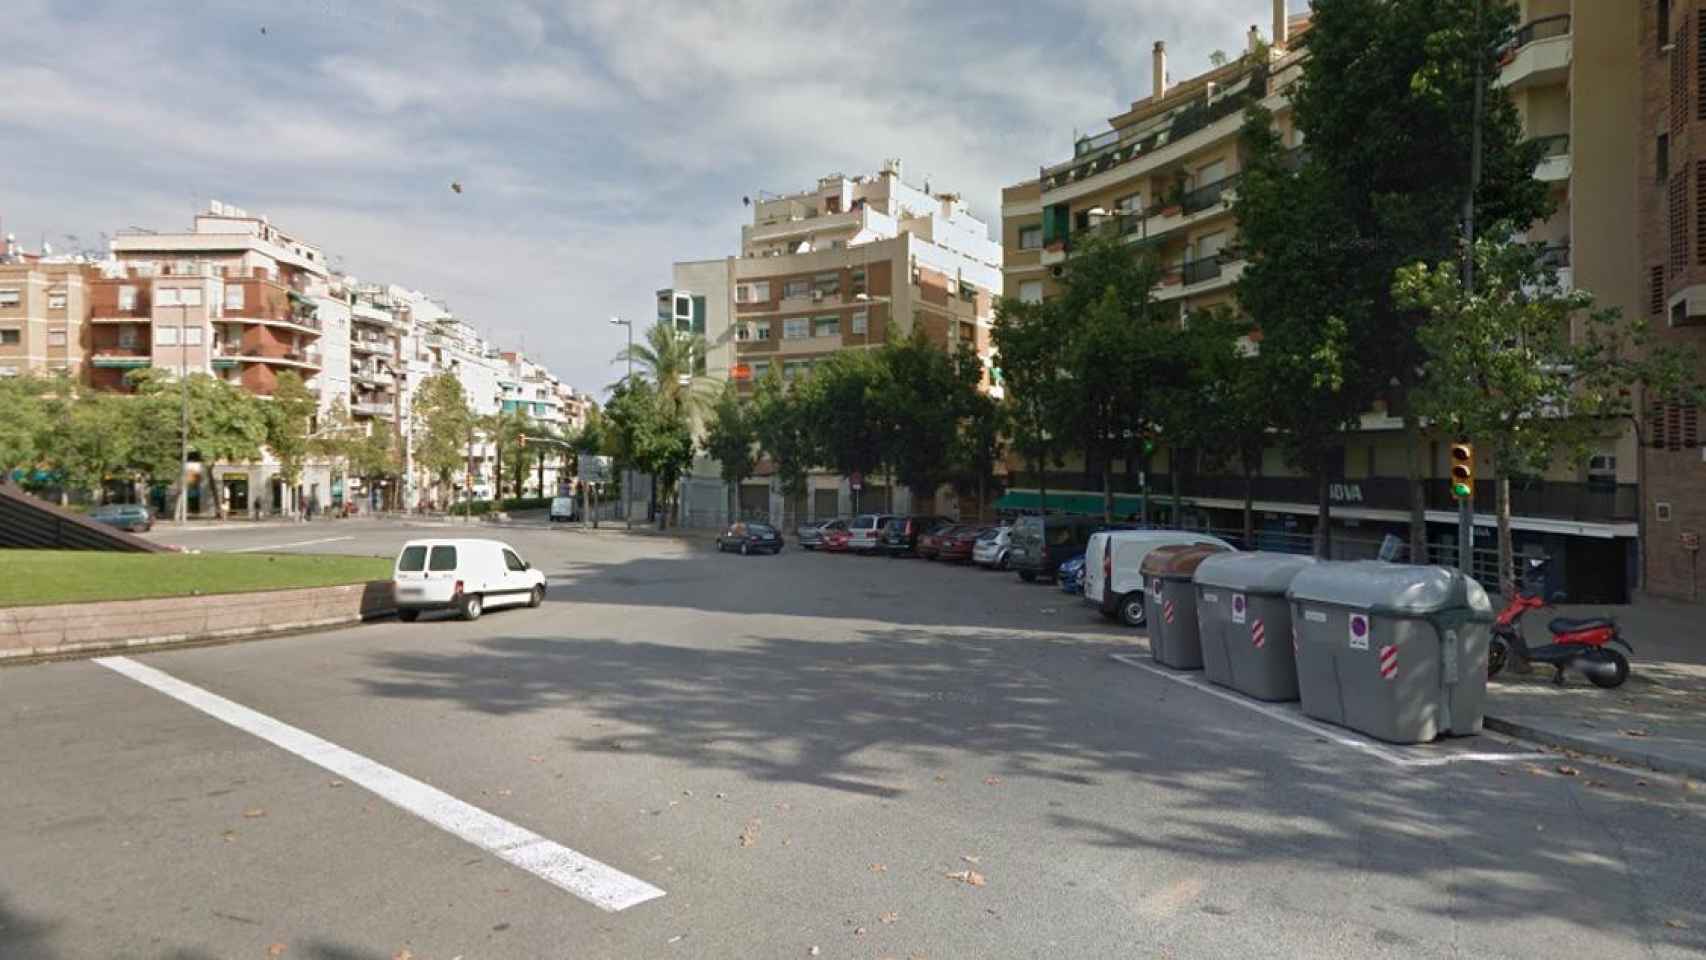 Imagen de la plaça de la República, donde habría ocurrido la violación grupal / Google Maps